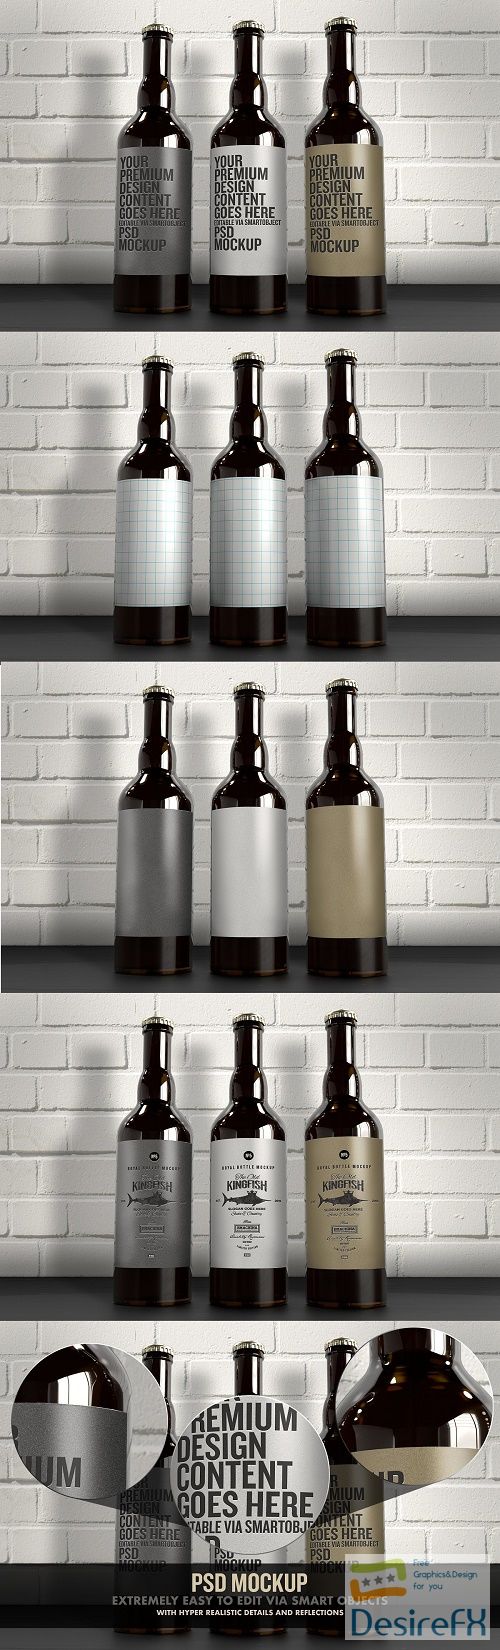 The 3 Beer Bottles Mockup - 4516634